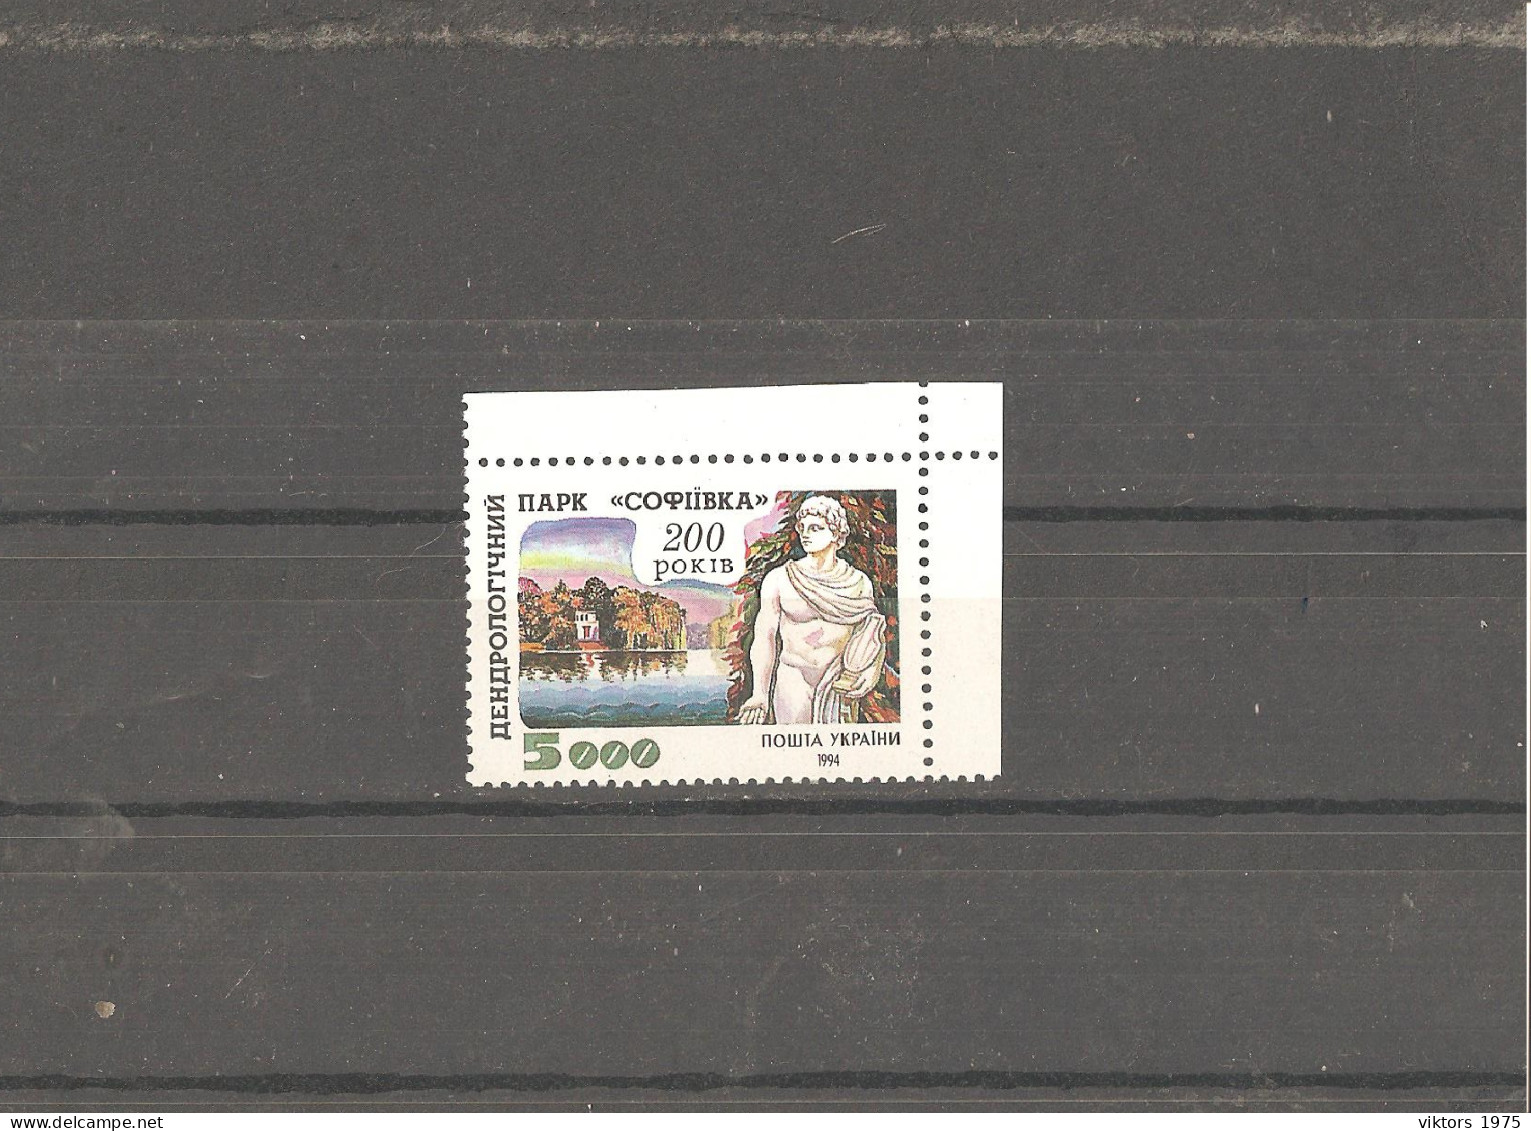 MNH Stamp Nr.131 In MICHEL Catalog - Ukraine